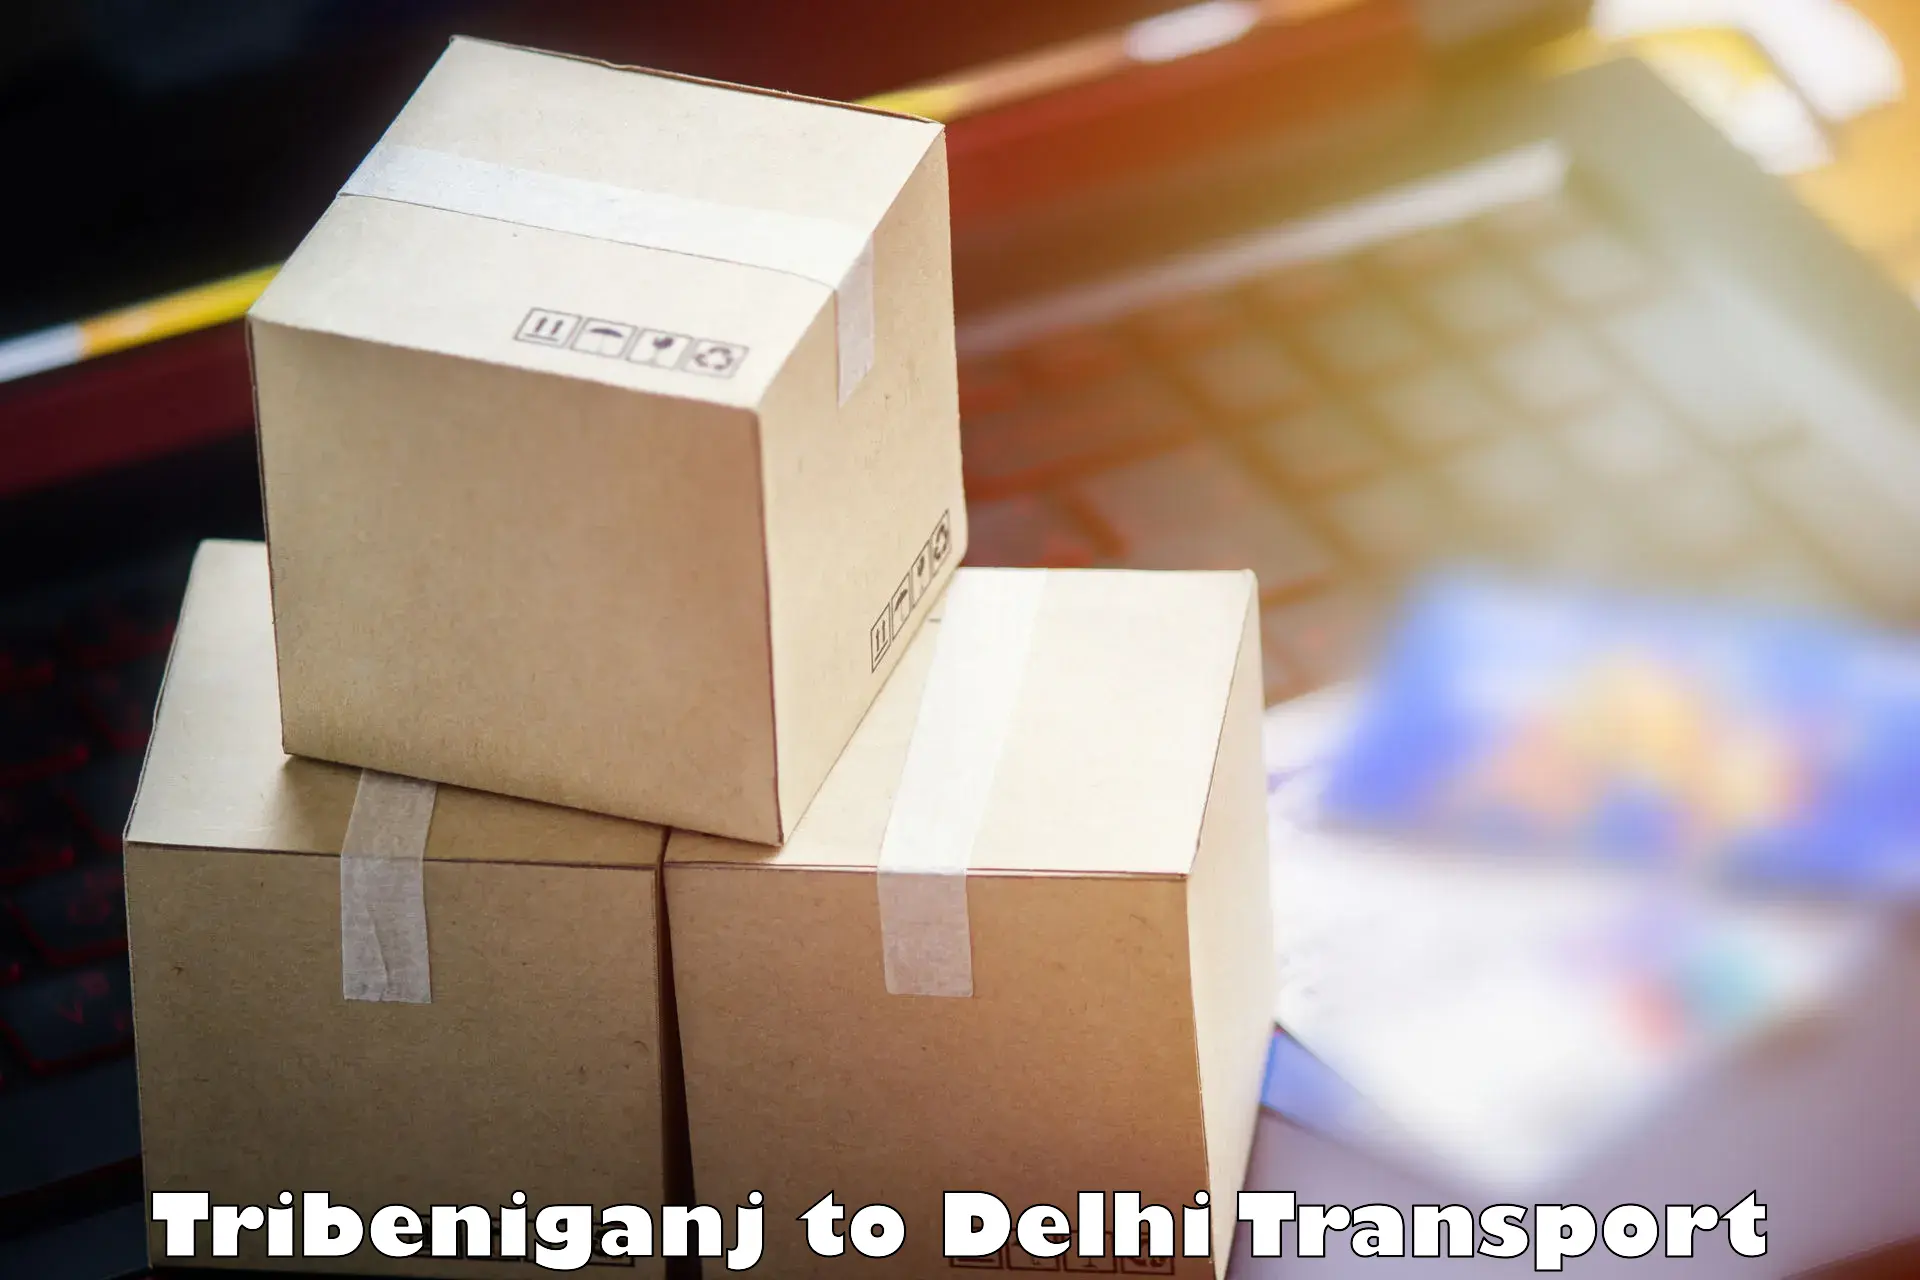 Shipping partner Tribeniganj to Delhi